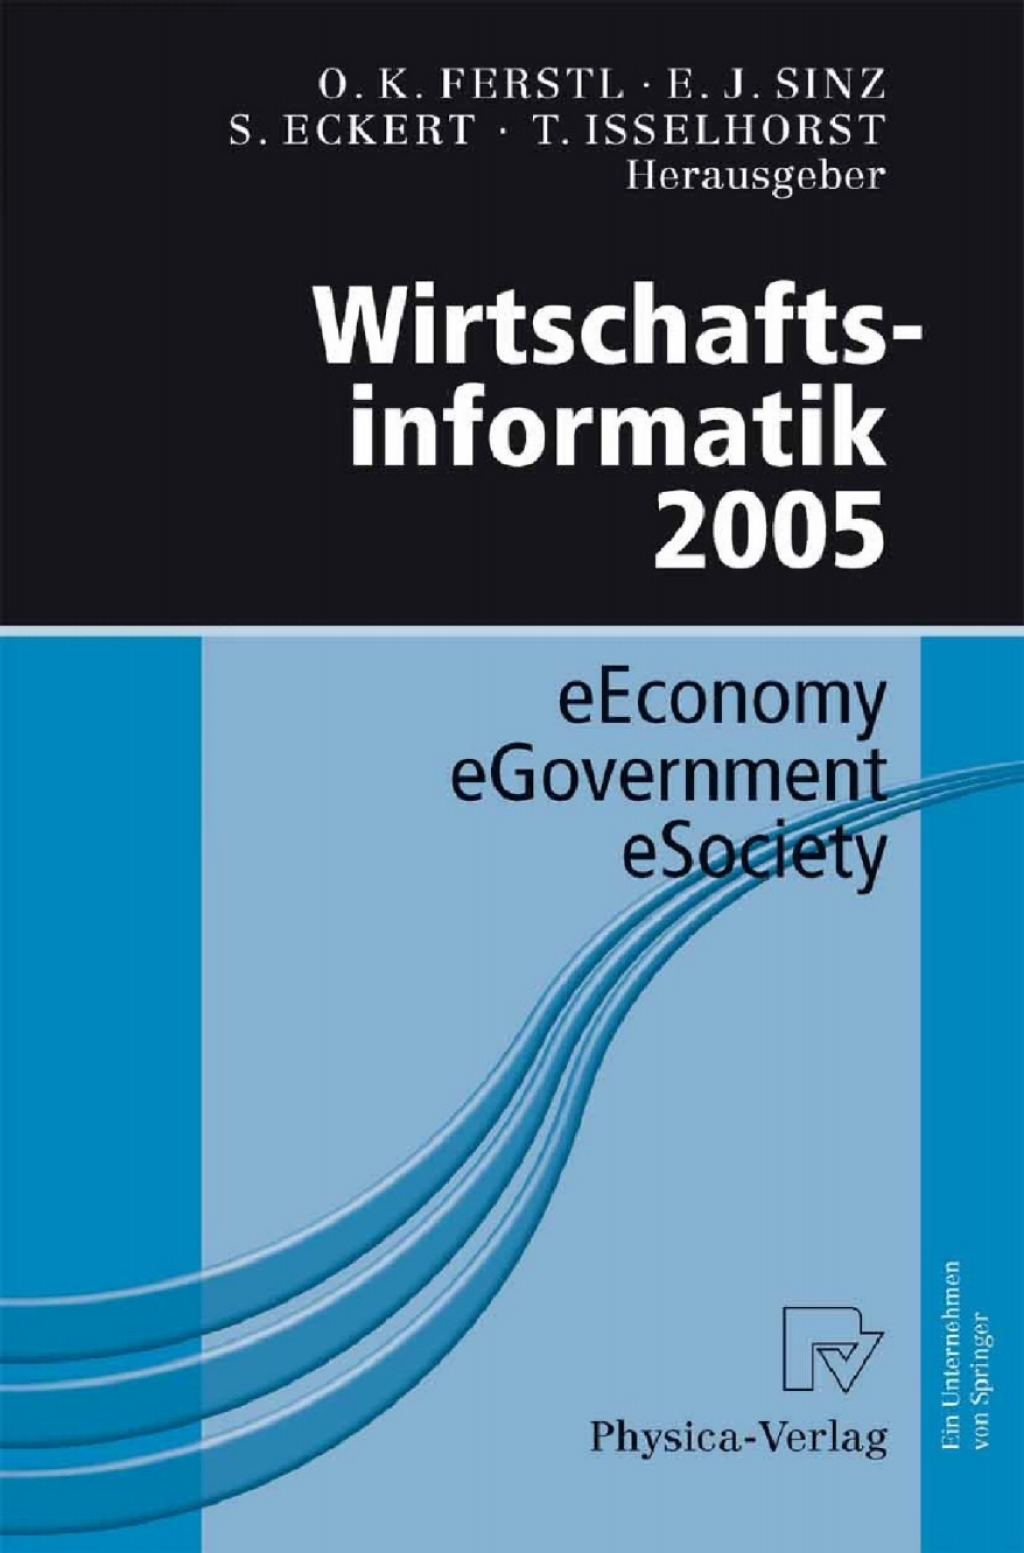 Wirtschaftsinformatik 2005 (eBook Rental)